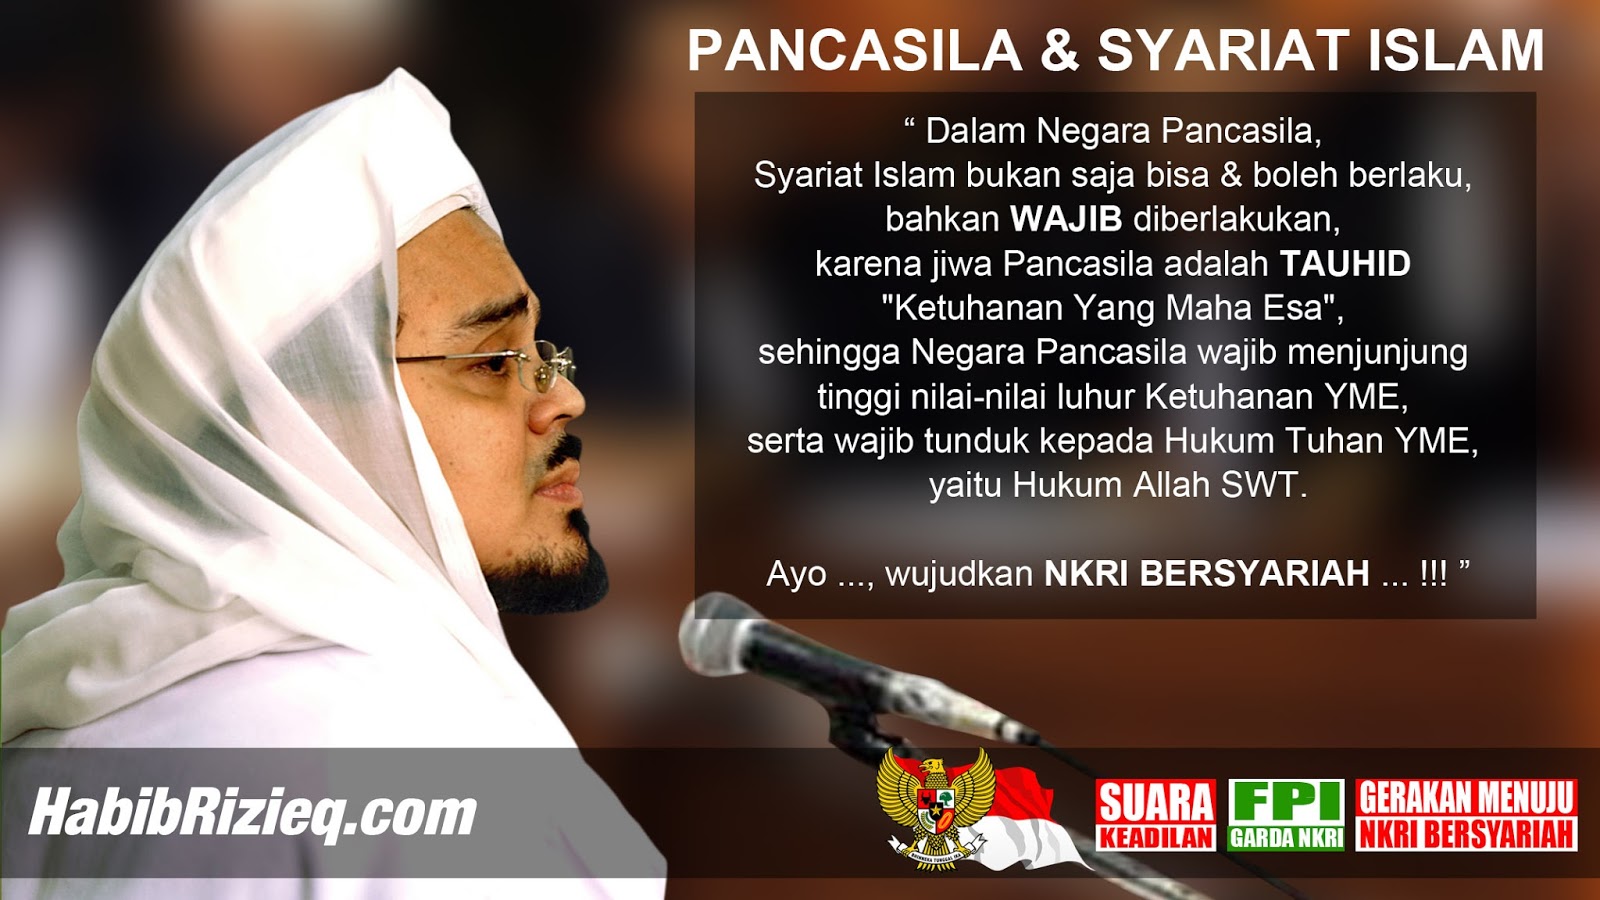 Habib Rizieq Tahun 2020 Syariat Islam Bisa Jalan Di Indonesia